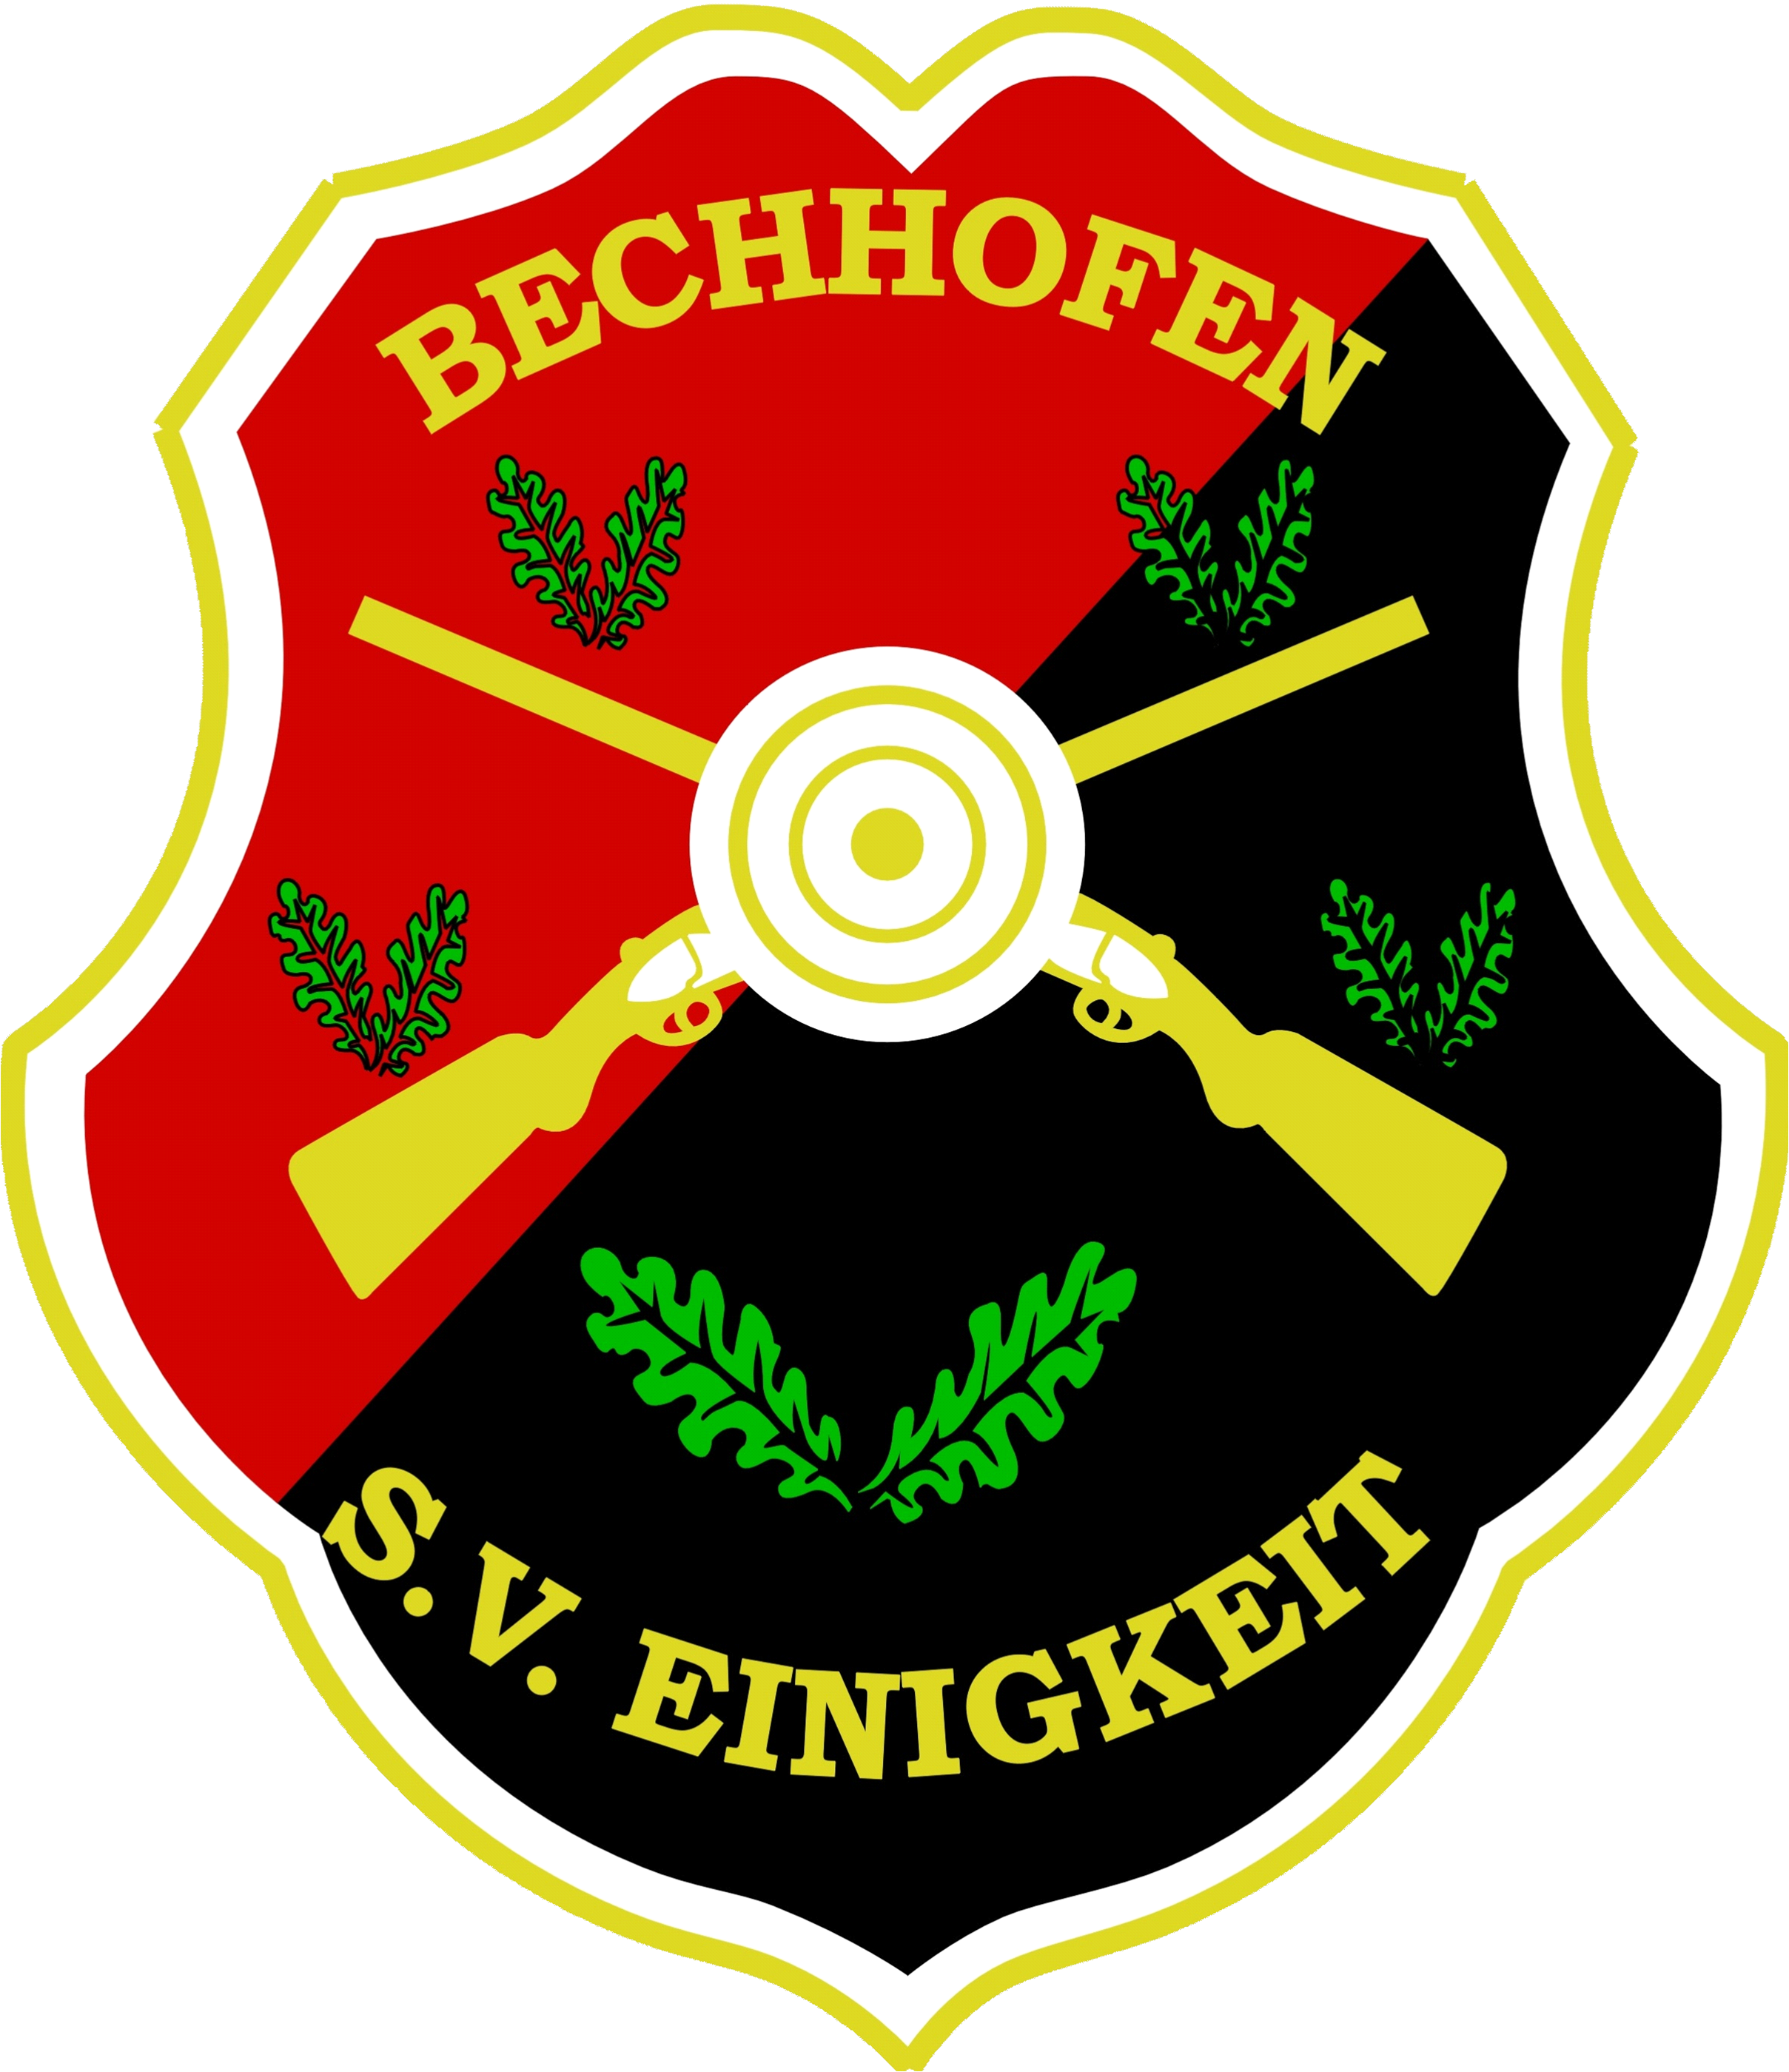 Schützenverein "Einigkeit" 1922 e.V.